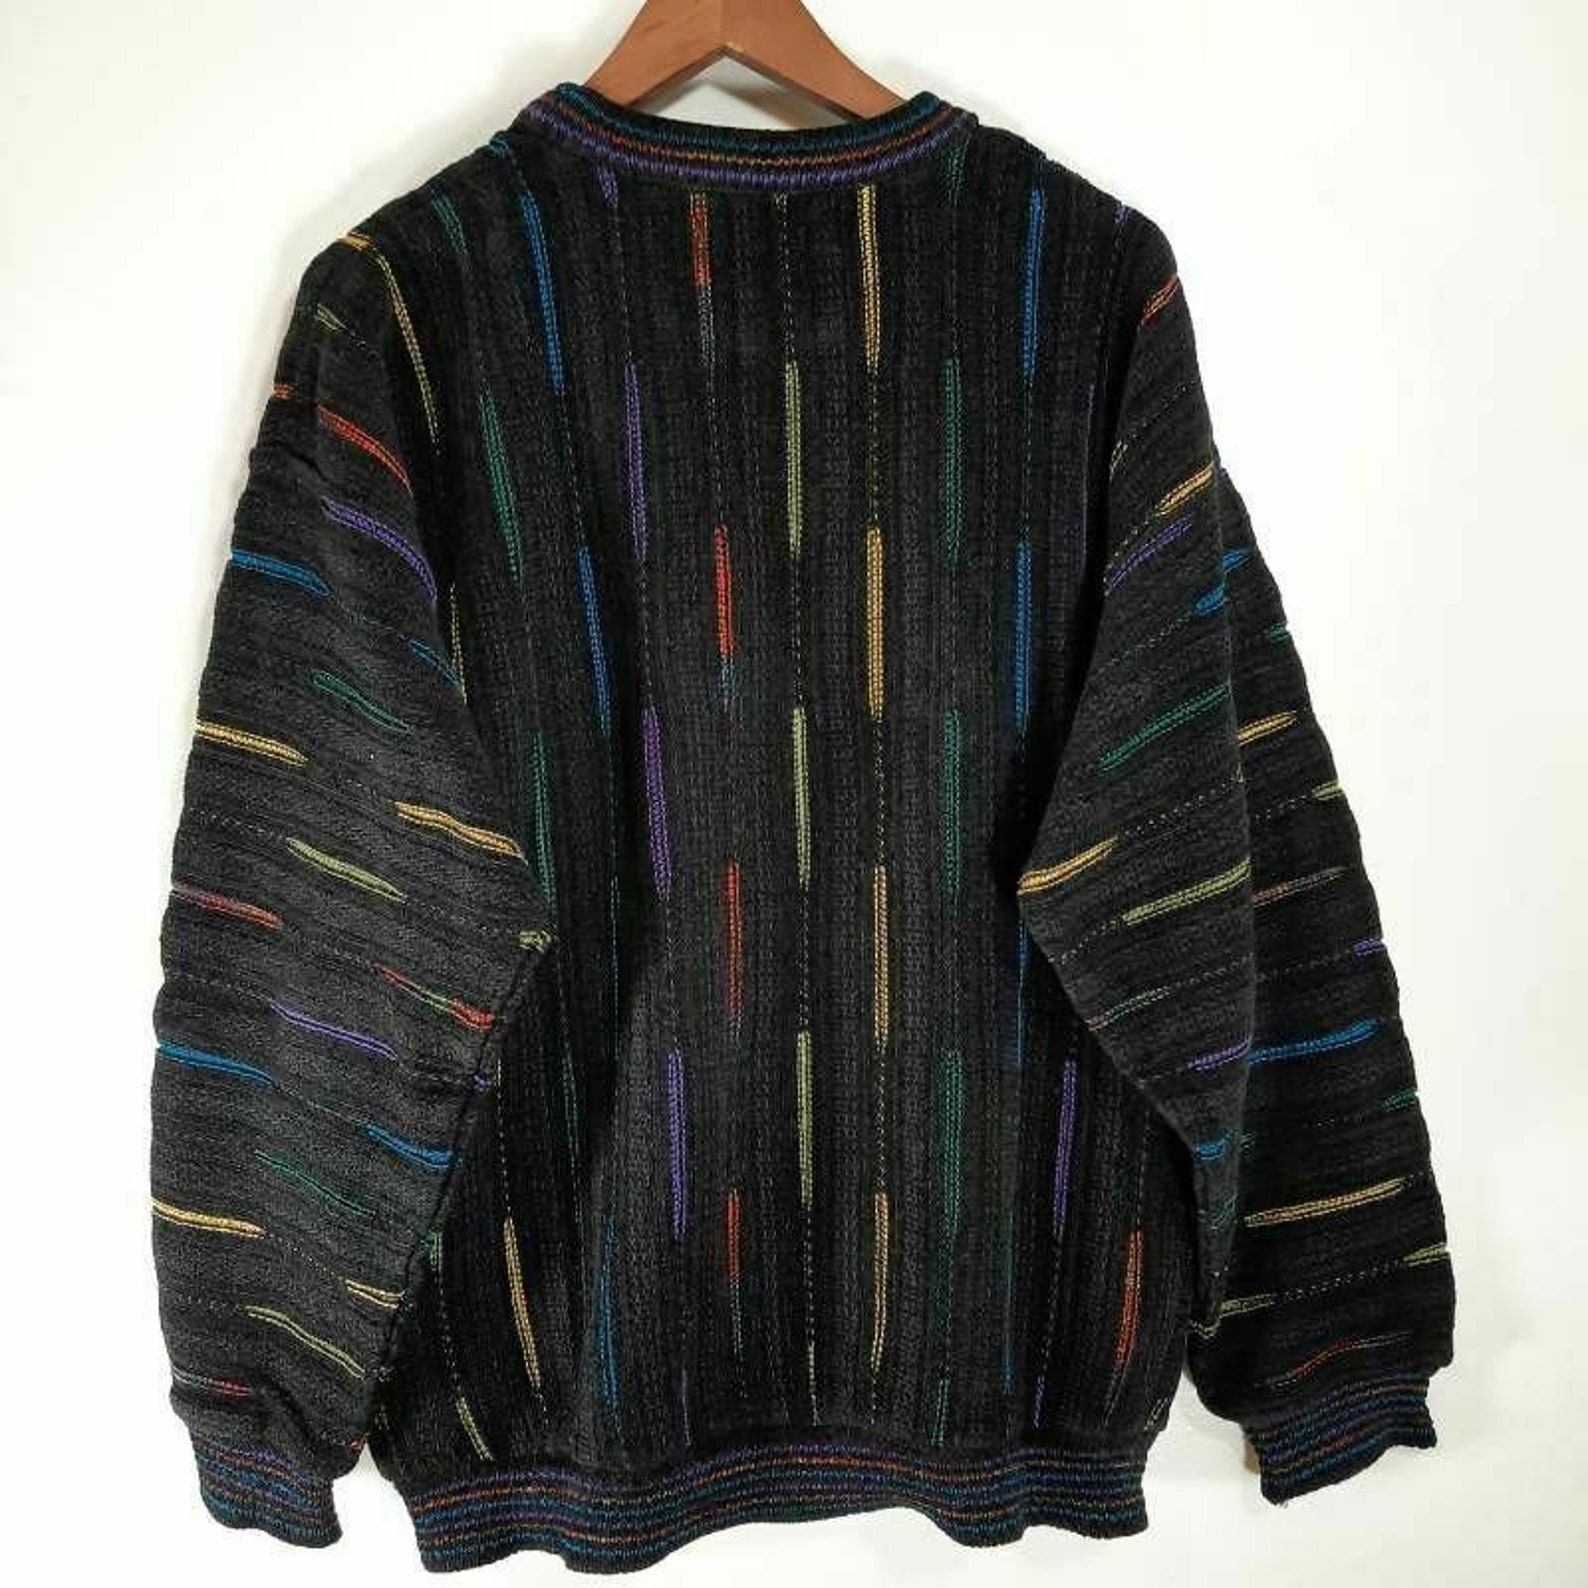 Tundra Men's Pullover Sweater Multicolor Blue Stripe Crew | Etsy